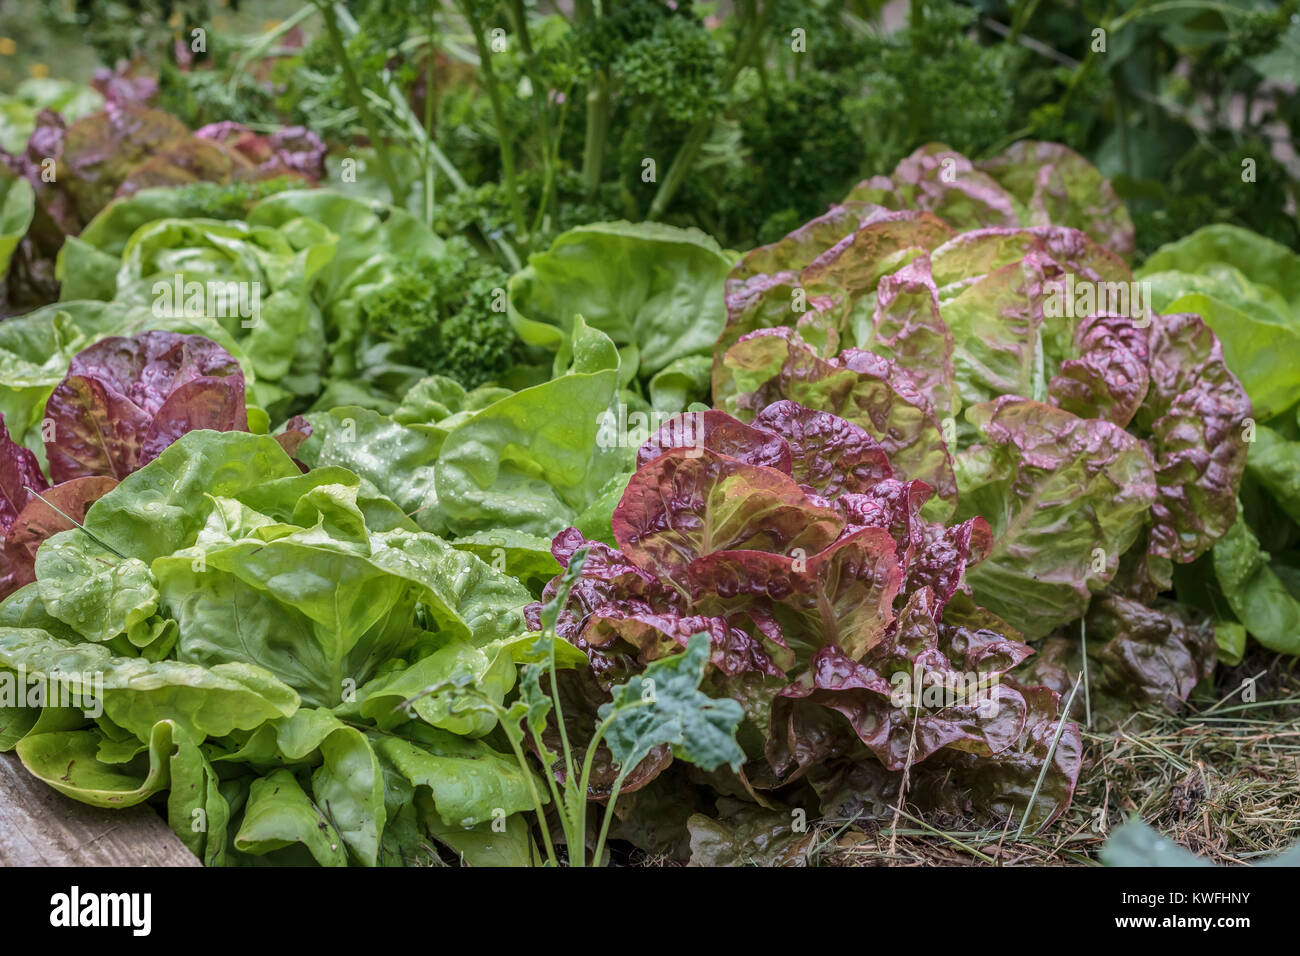 Wet rosso e verde varietà di lattuga cappuccina crescere densamente in un giardino nel cortile (angolo di legno del letto sollevata visibile in basso a sinistra). Foto Stock